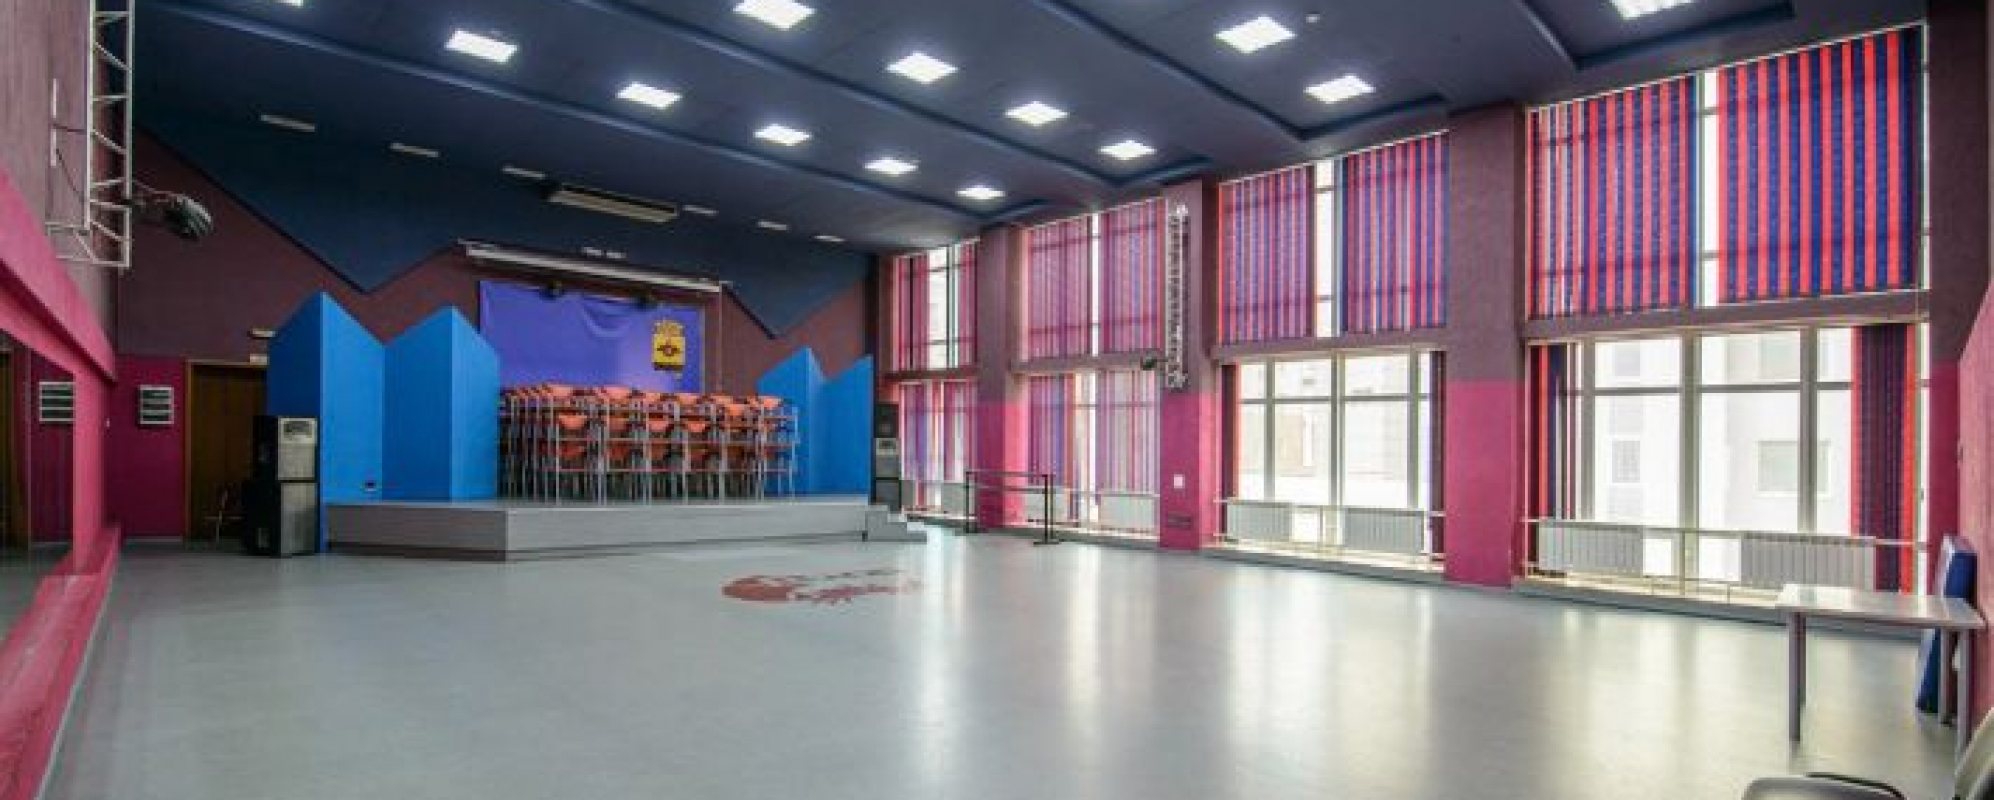 Фотографии концертного зала Малый зал МКЦ